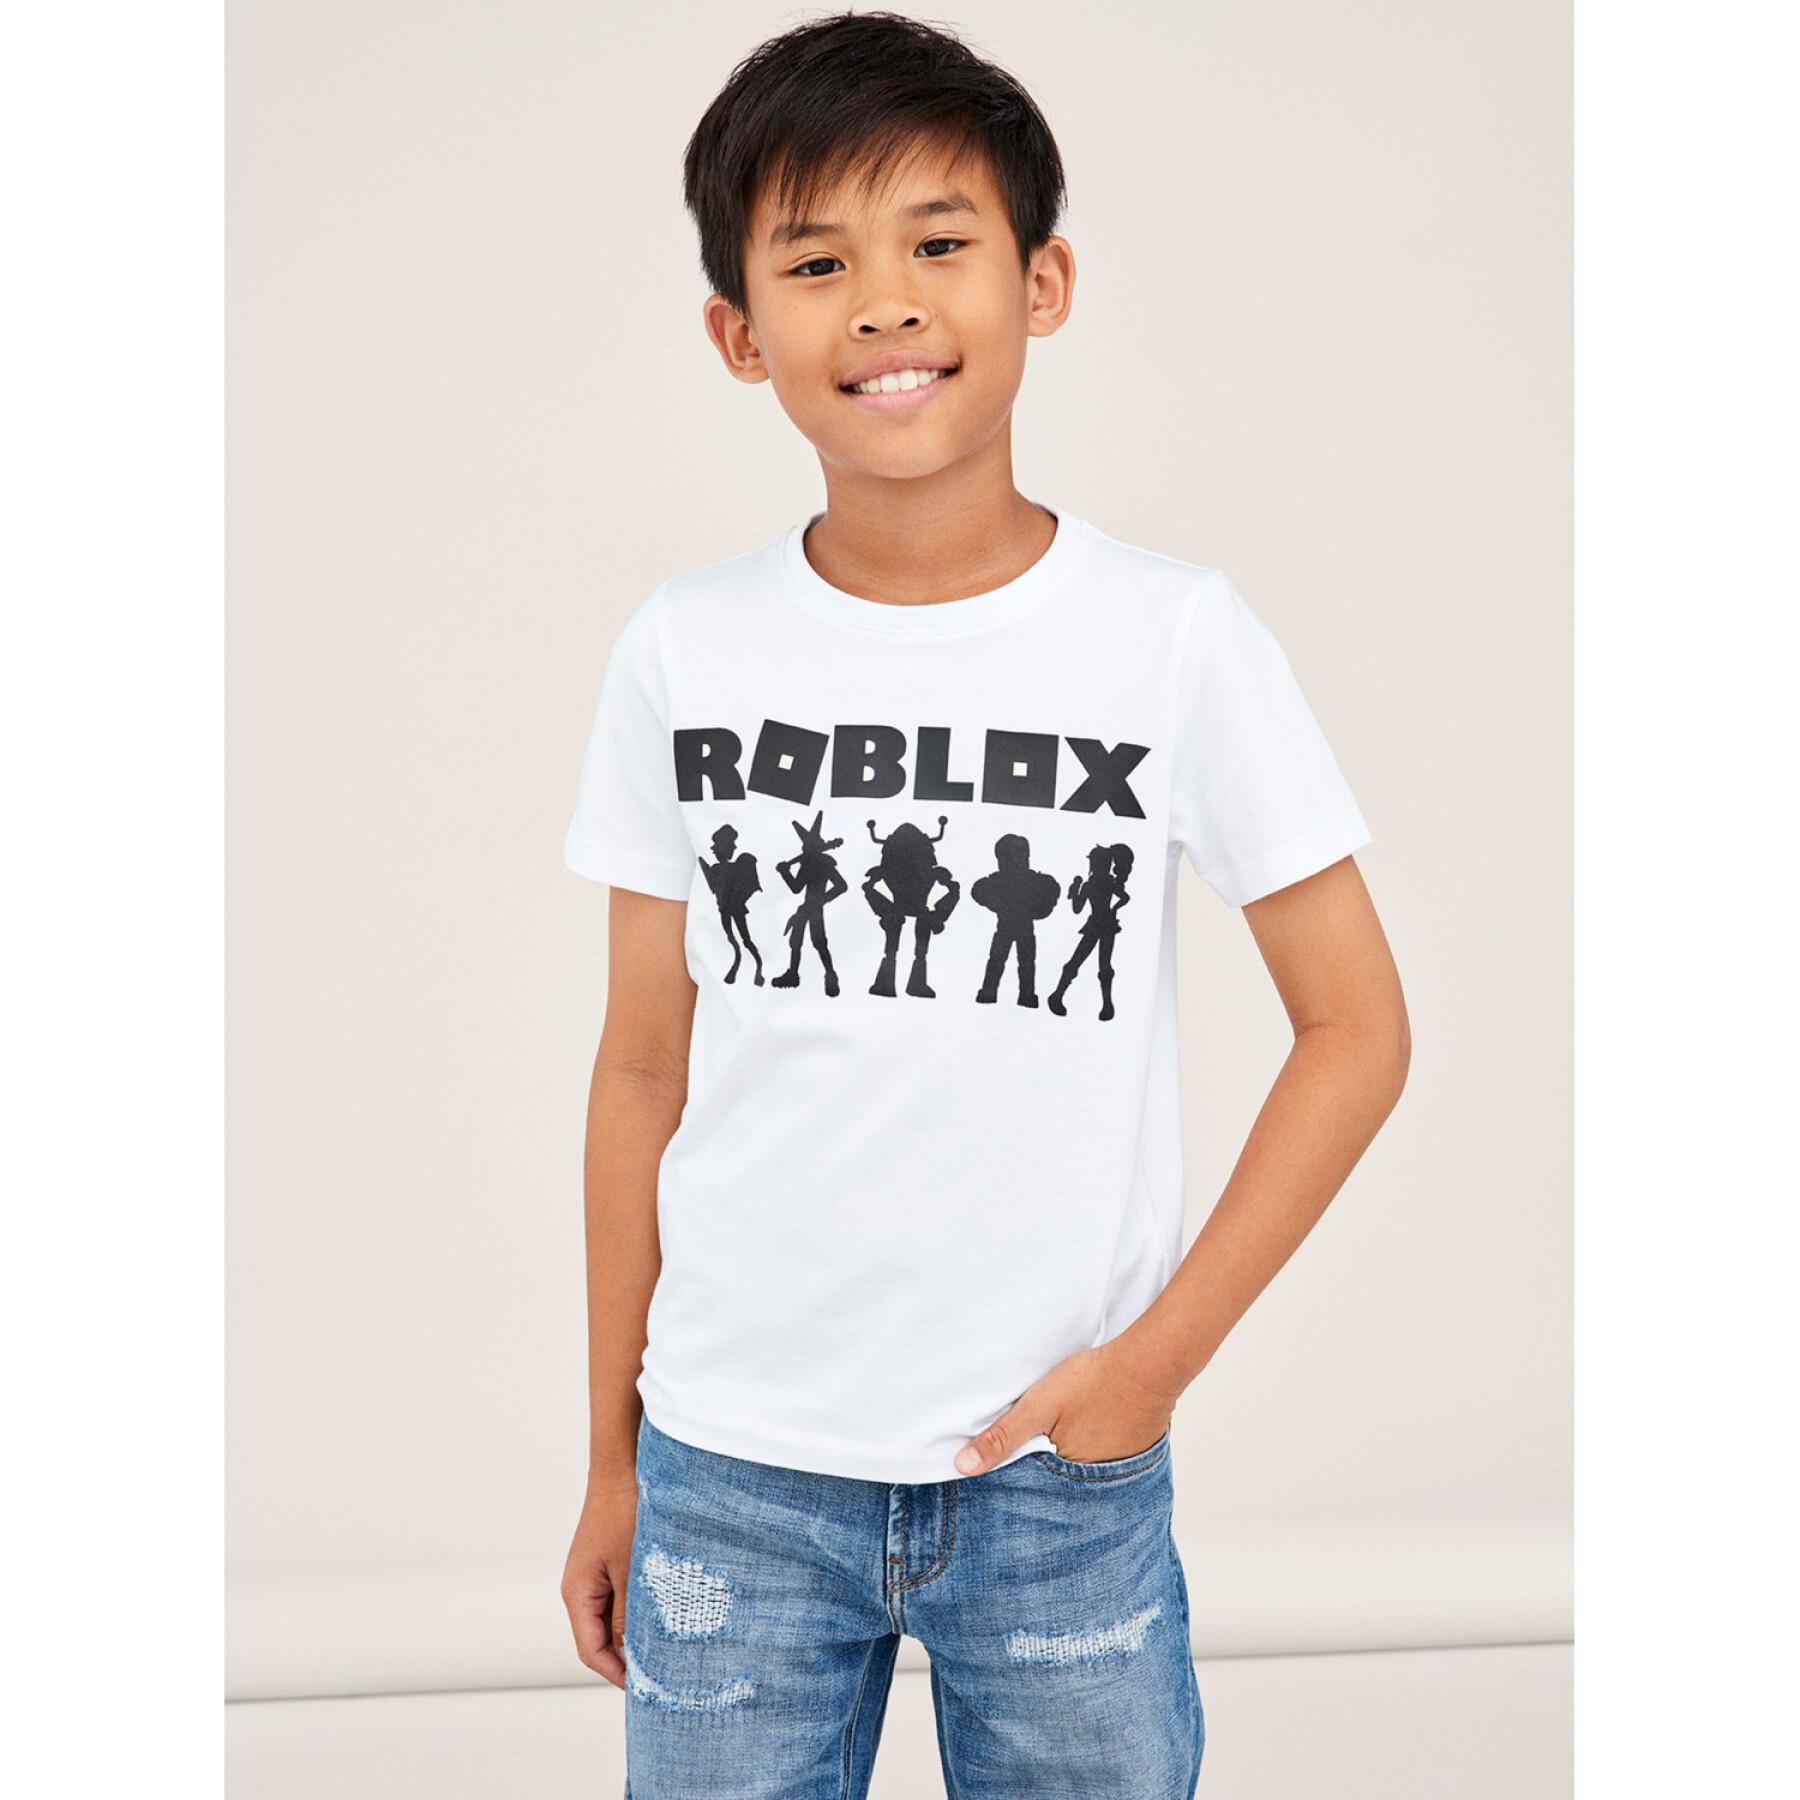 Maglietta per bambini Name it Roblox Nash Bio